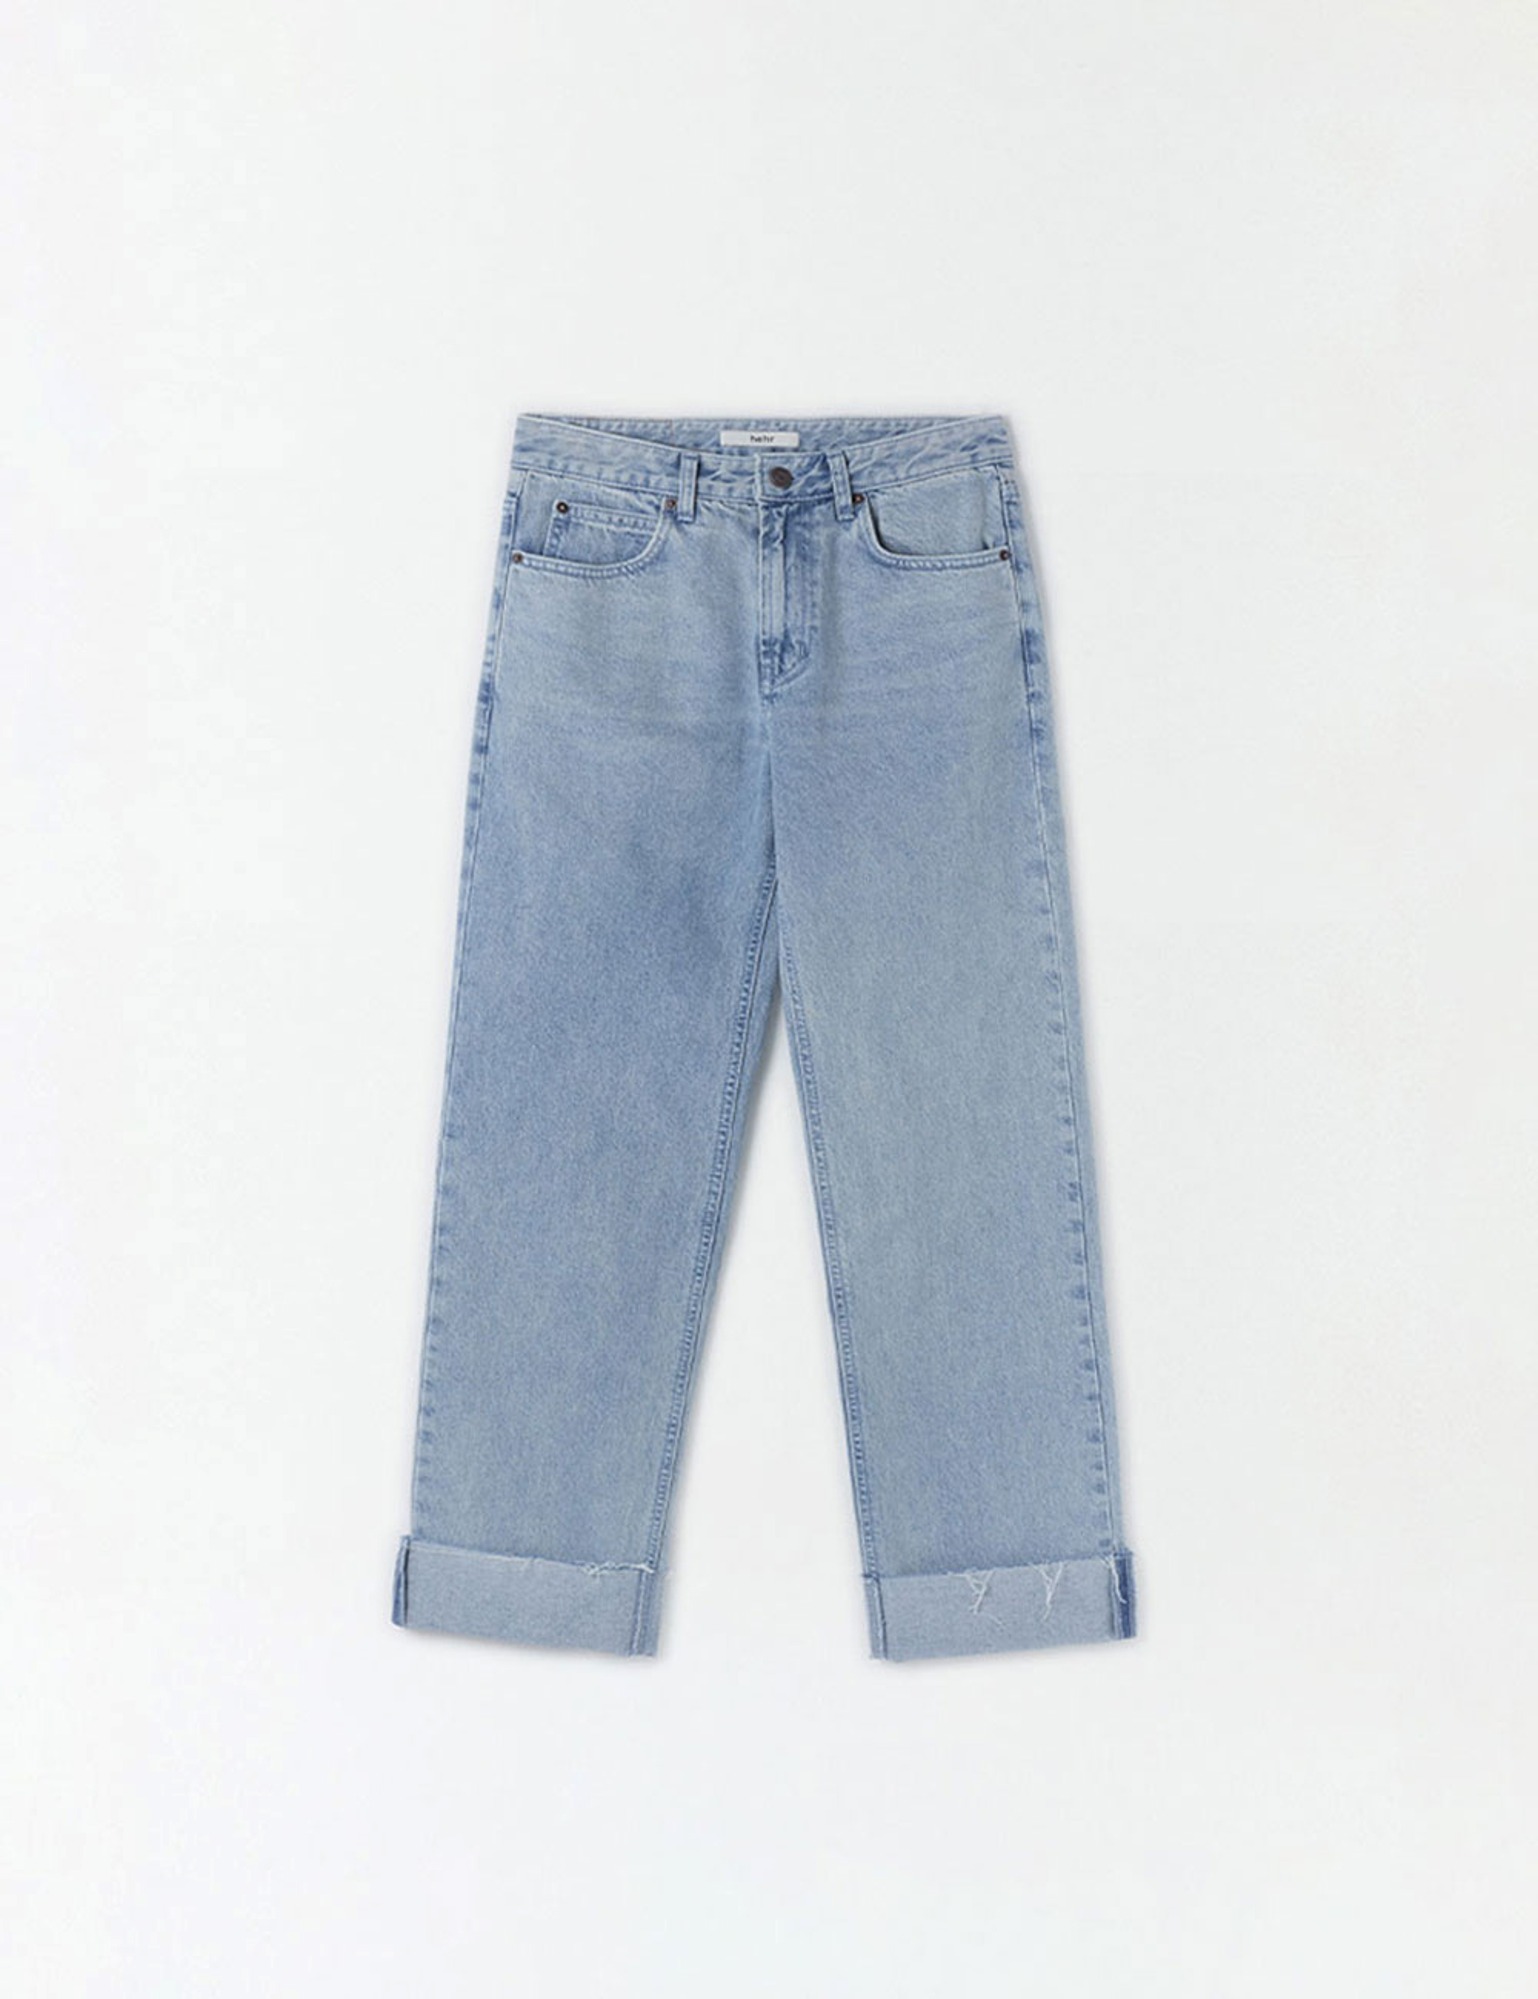 Plain Cut Denim Pants (Light Blue)